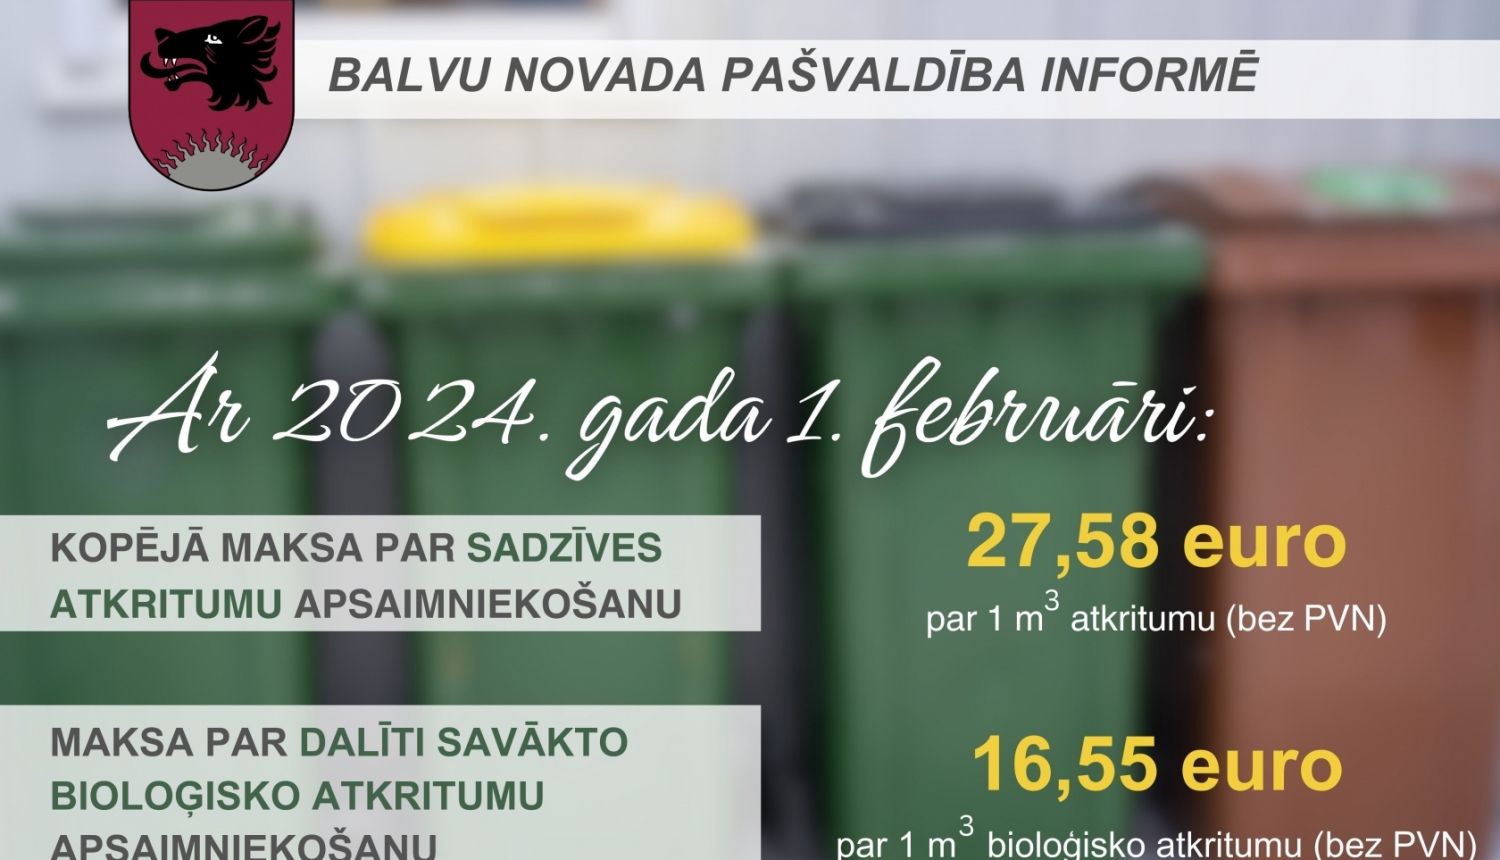 Balvu novada iedzīvotāji, šķirojot atkritumus, jūs maksāsiet mazāk, jo šķirotos atkritumus SIA "ZAAO" savāc bez maksas!